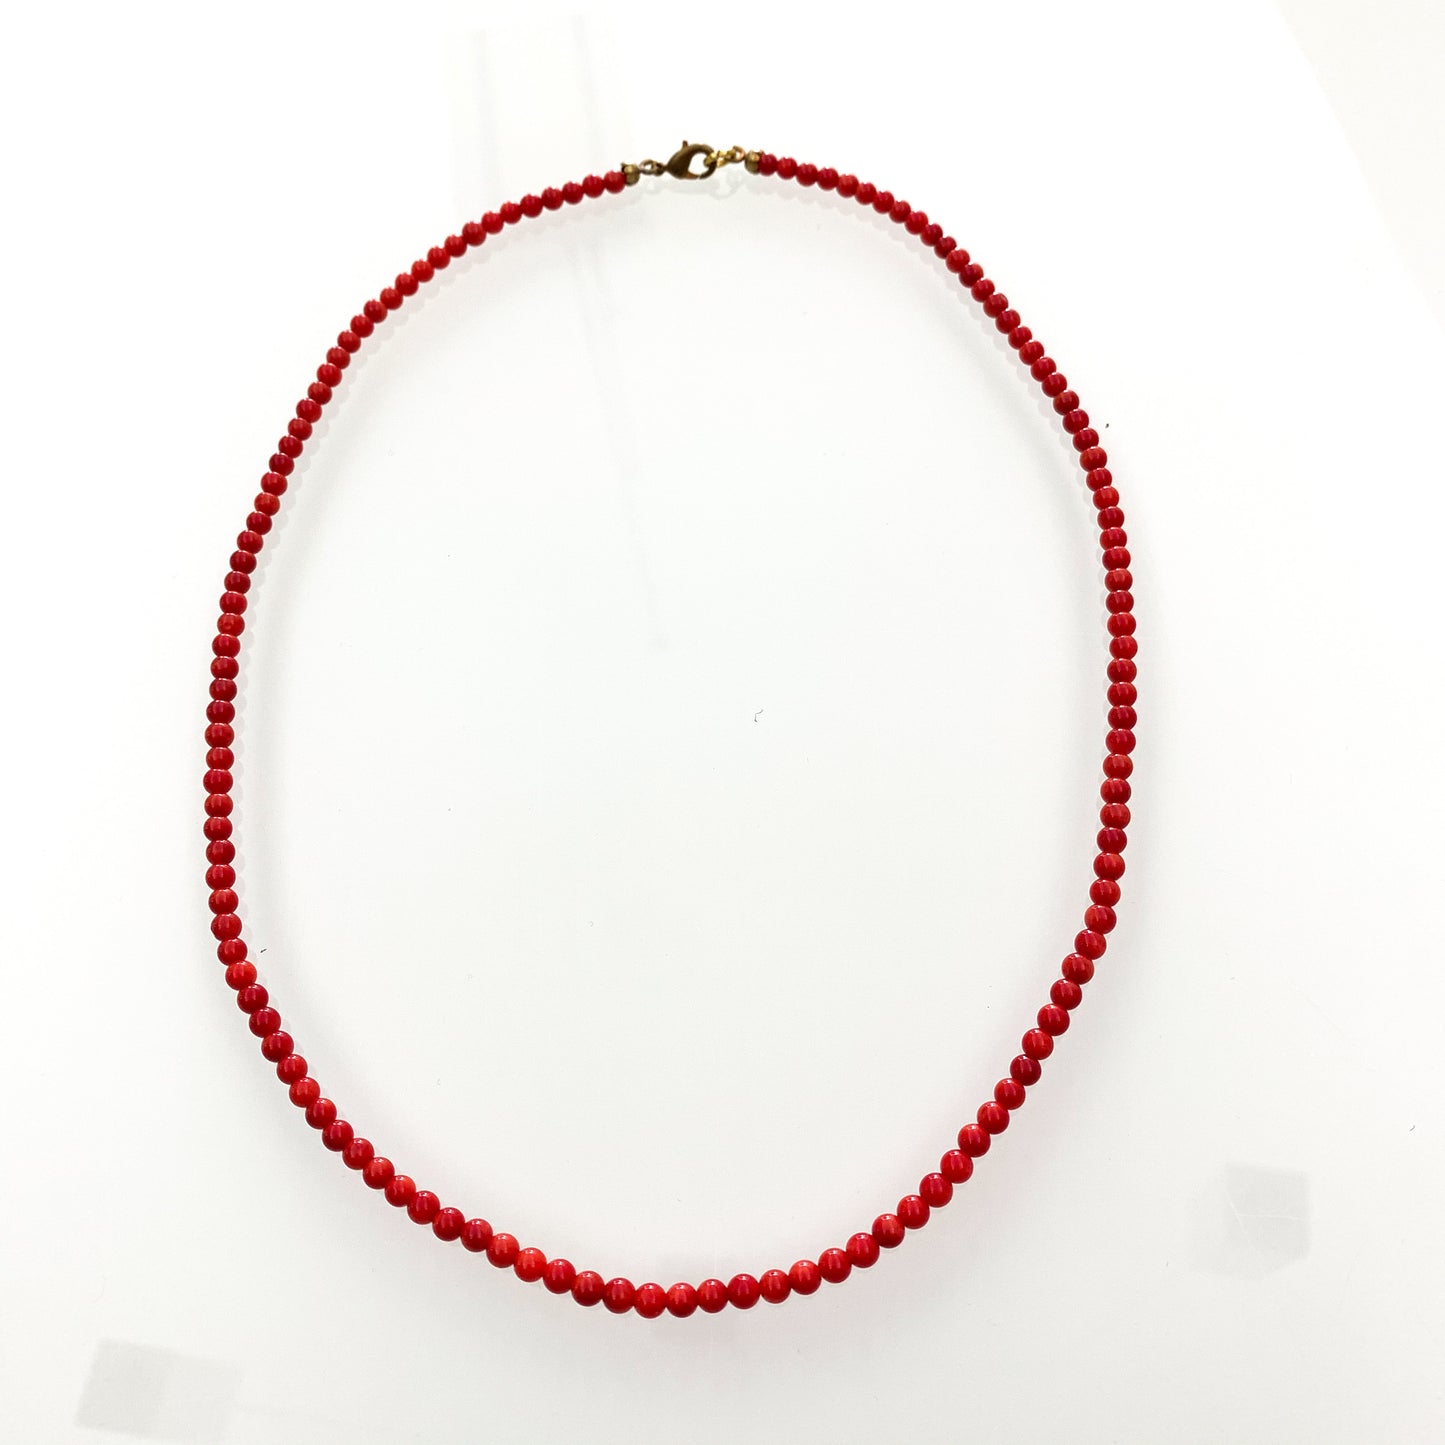 Collana in bijoux con perline color corallo rosso.  Lunghezza catena 52 cm.  Dimensione coralli 0,4 cm.  Spedizione gratuita con confezione regalo. 